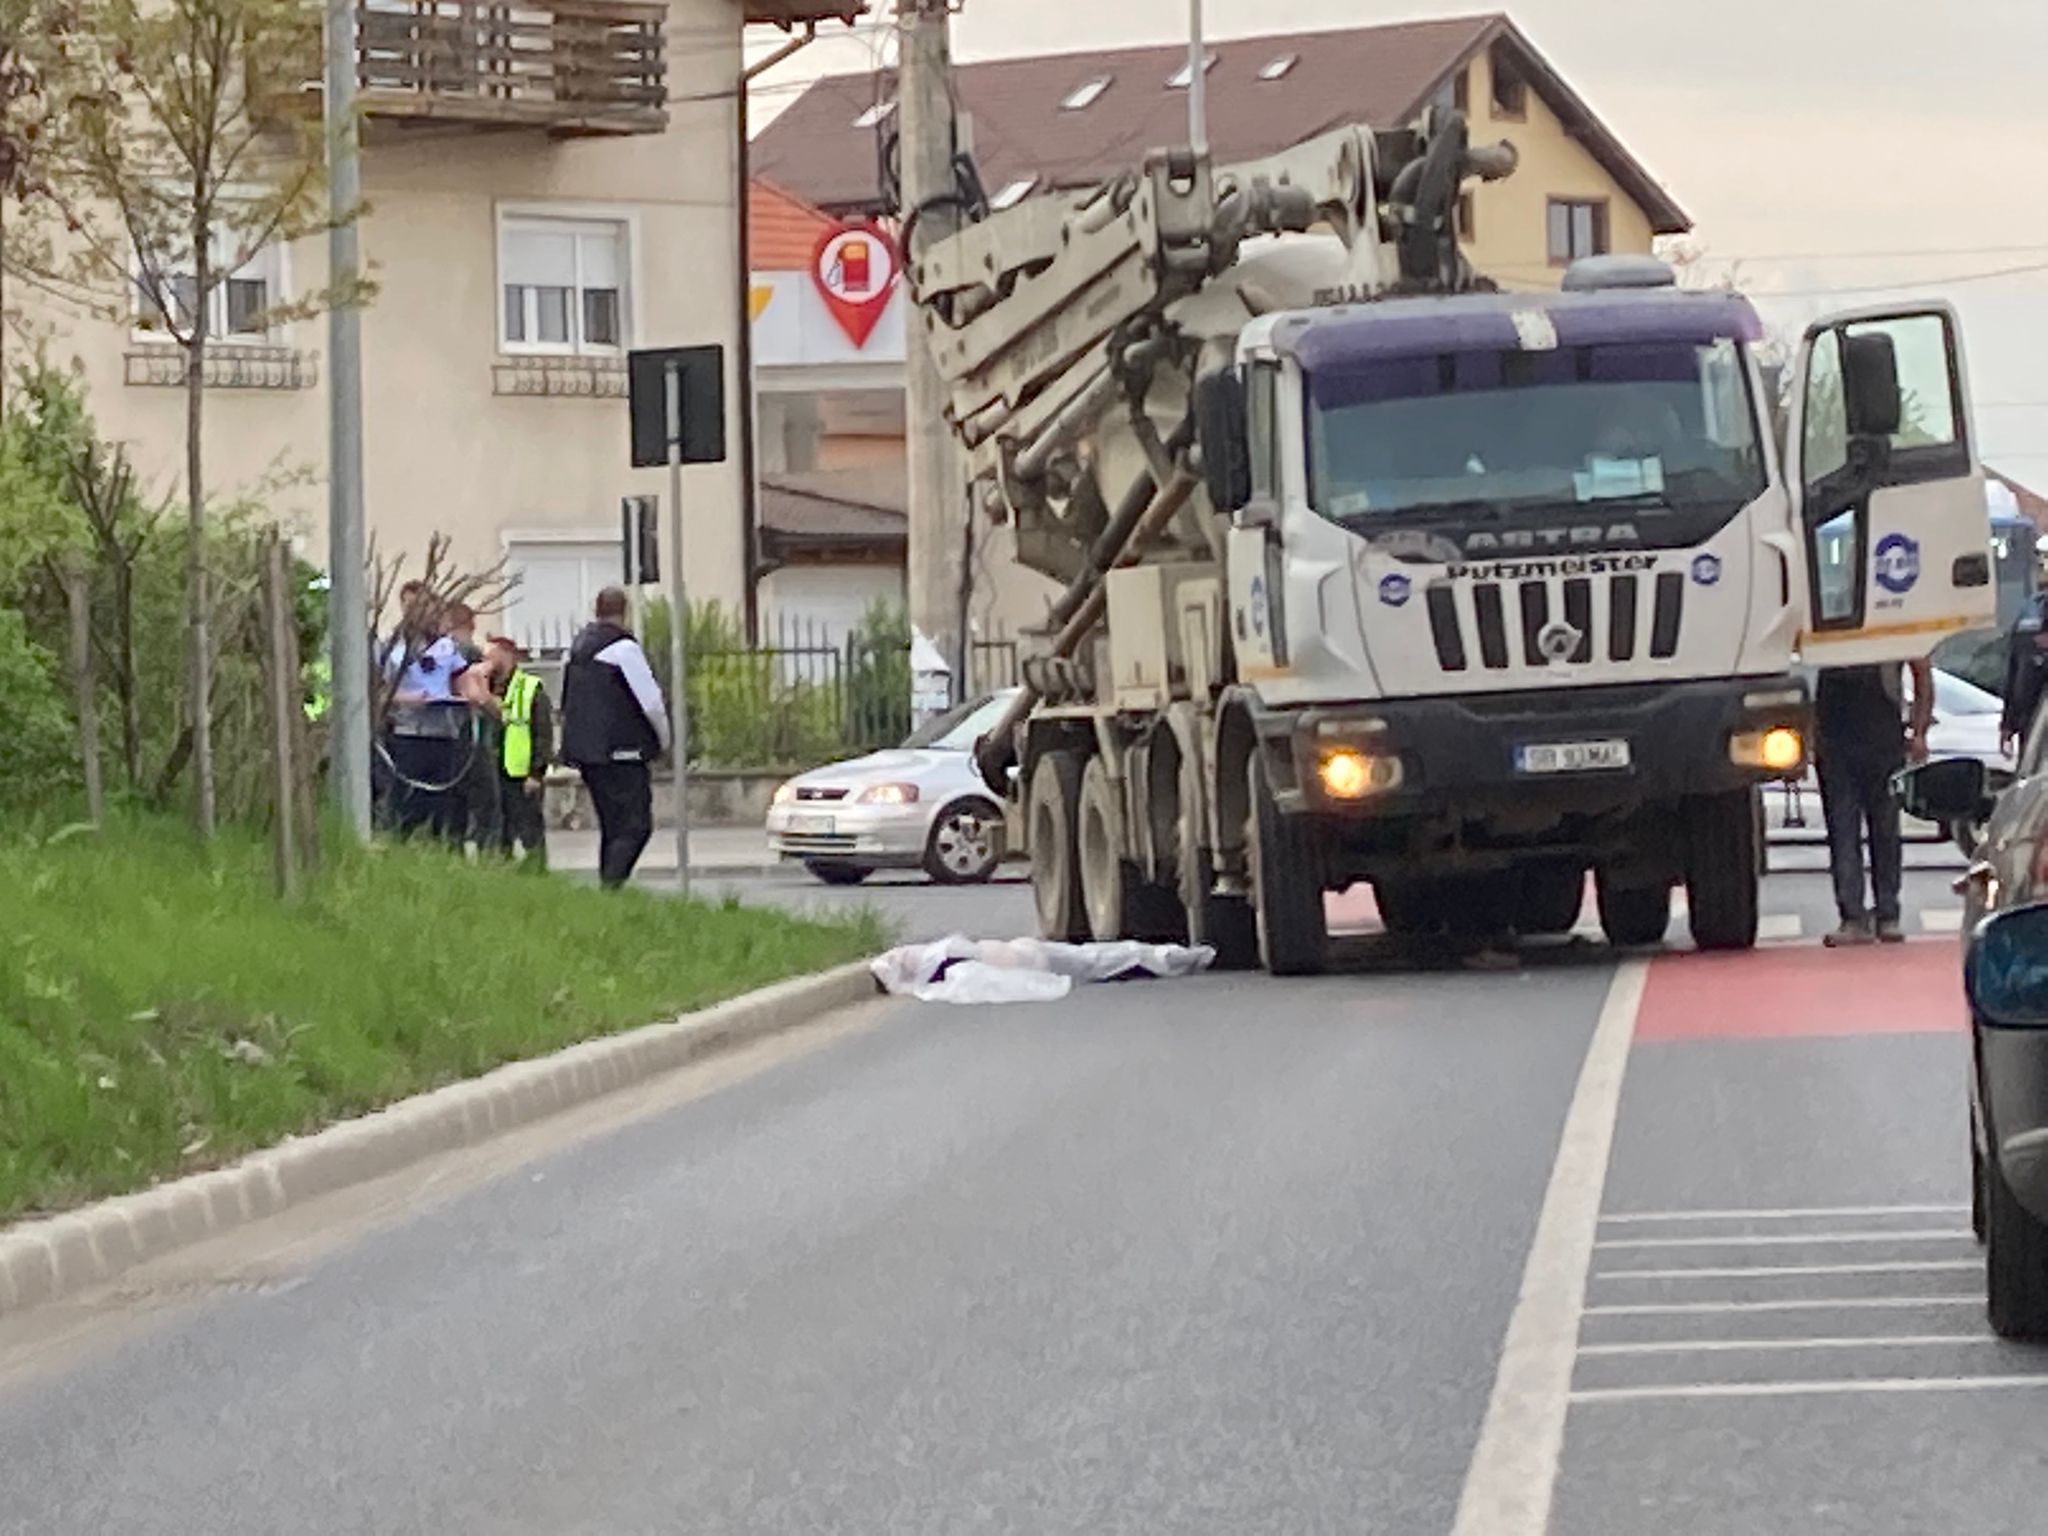 Actualizare: S-a declarat decesul persoanei accidentate pe Calea Cisnădiei. Se afla în traversare pe trecerea de pietoni